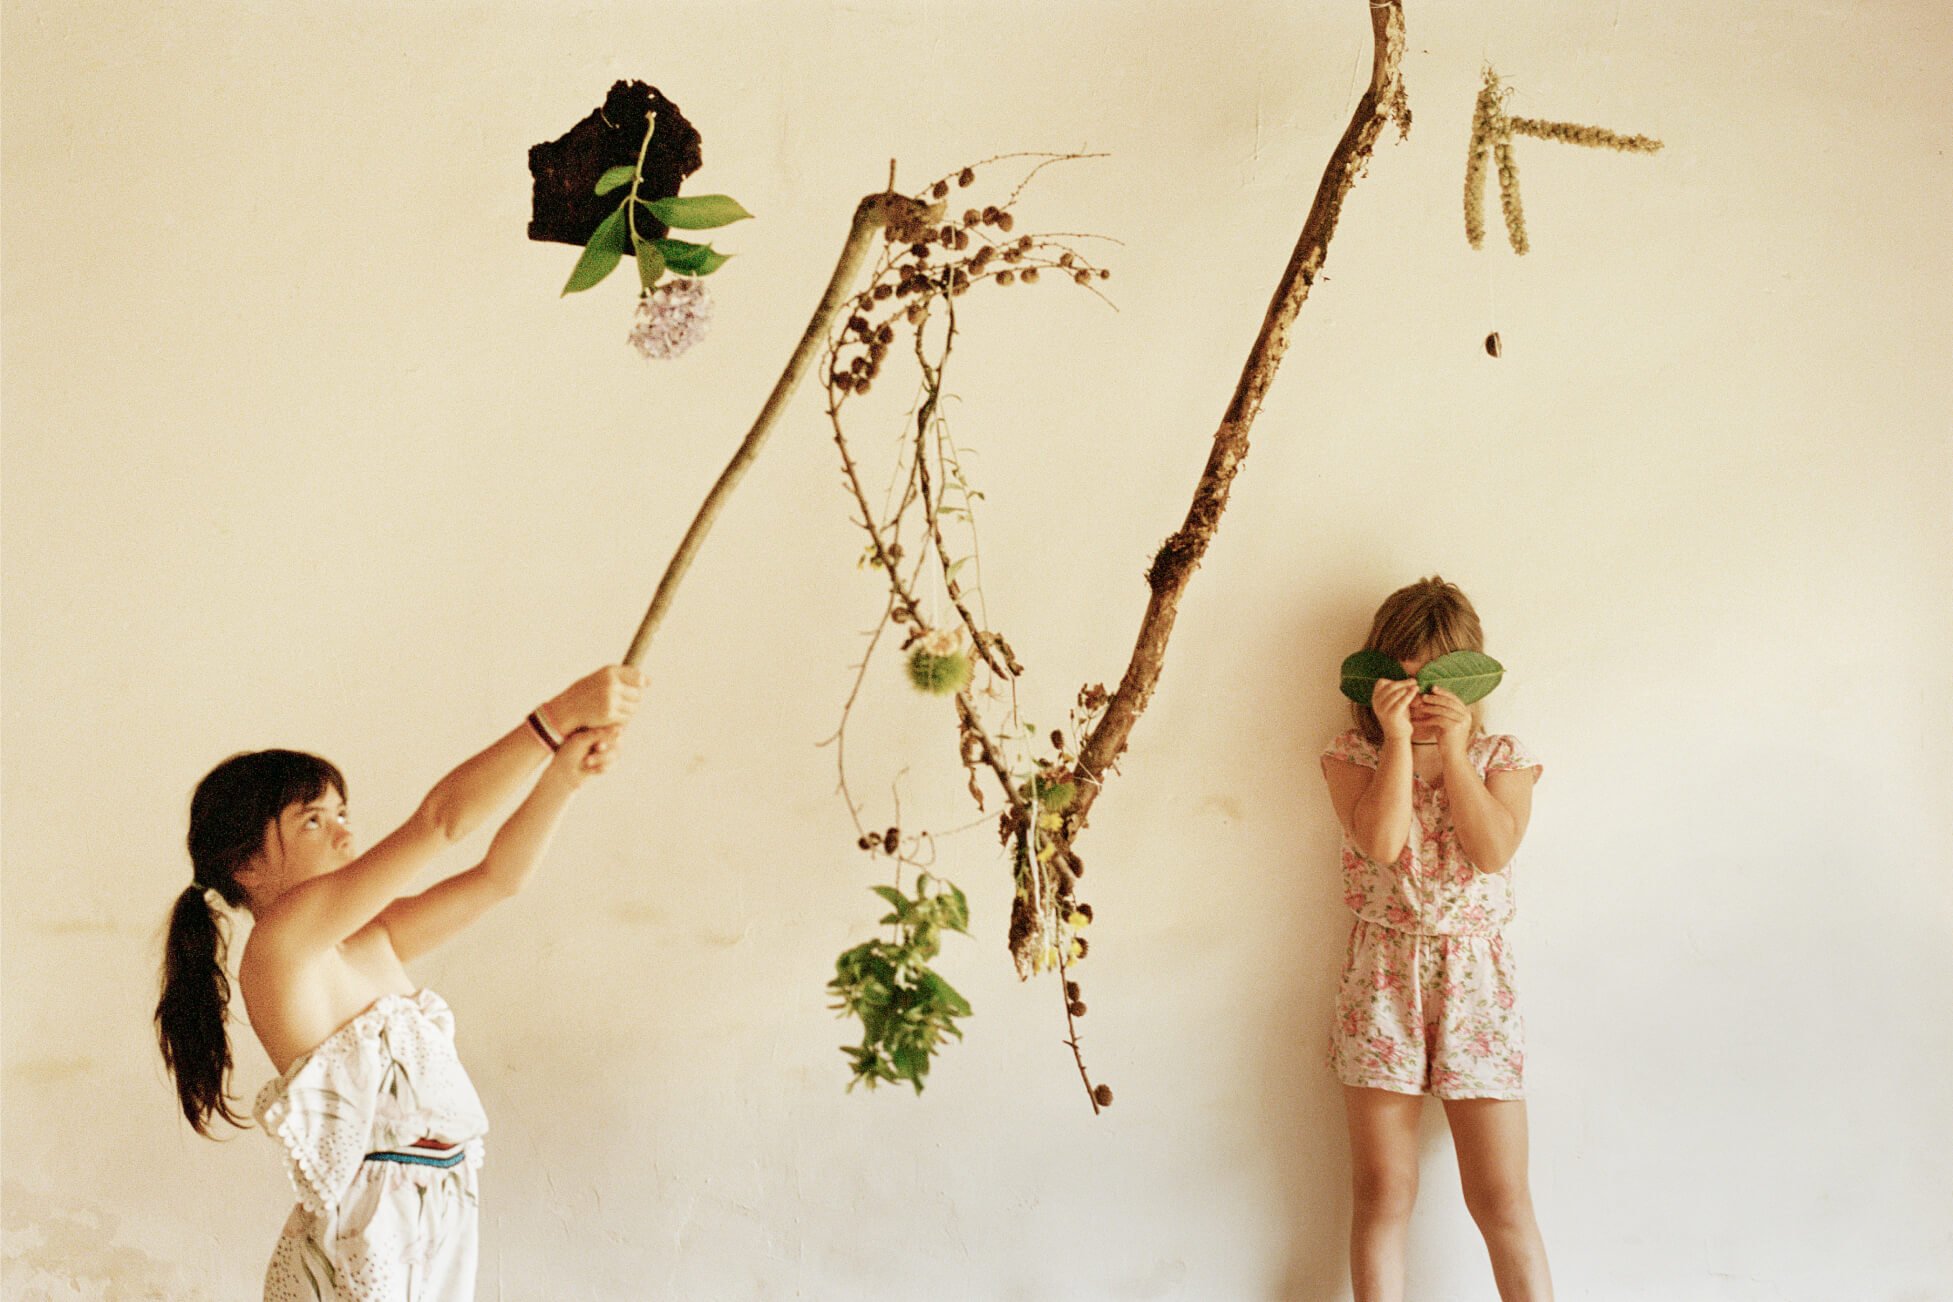 Zwei junge Mädchen spielen vor neutralem Hintergrund mit Zweigen und Blättern.